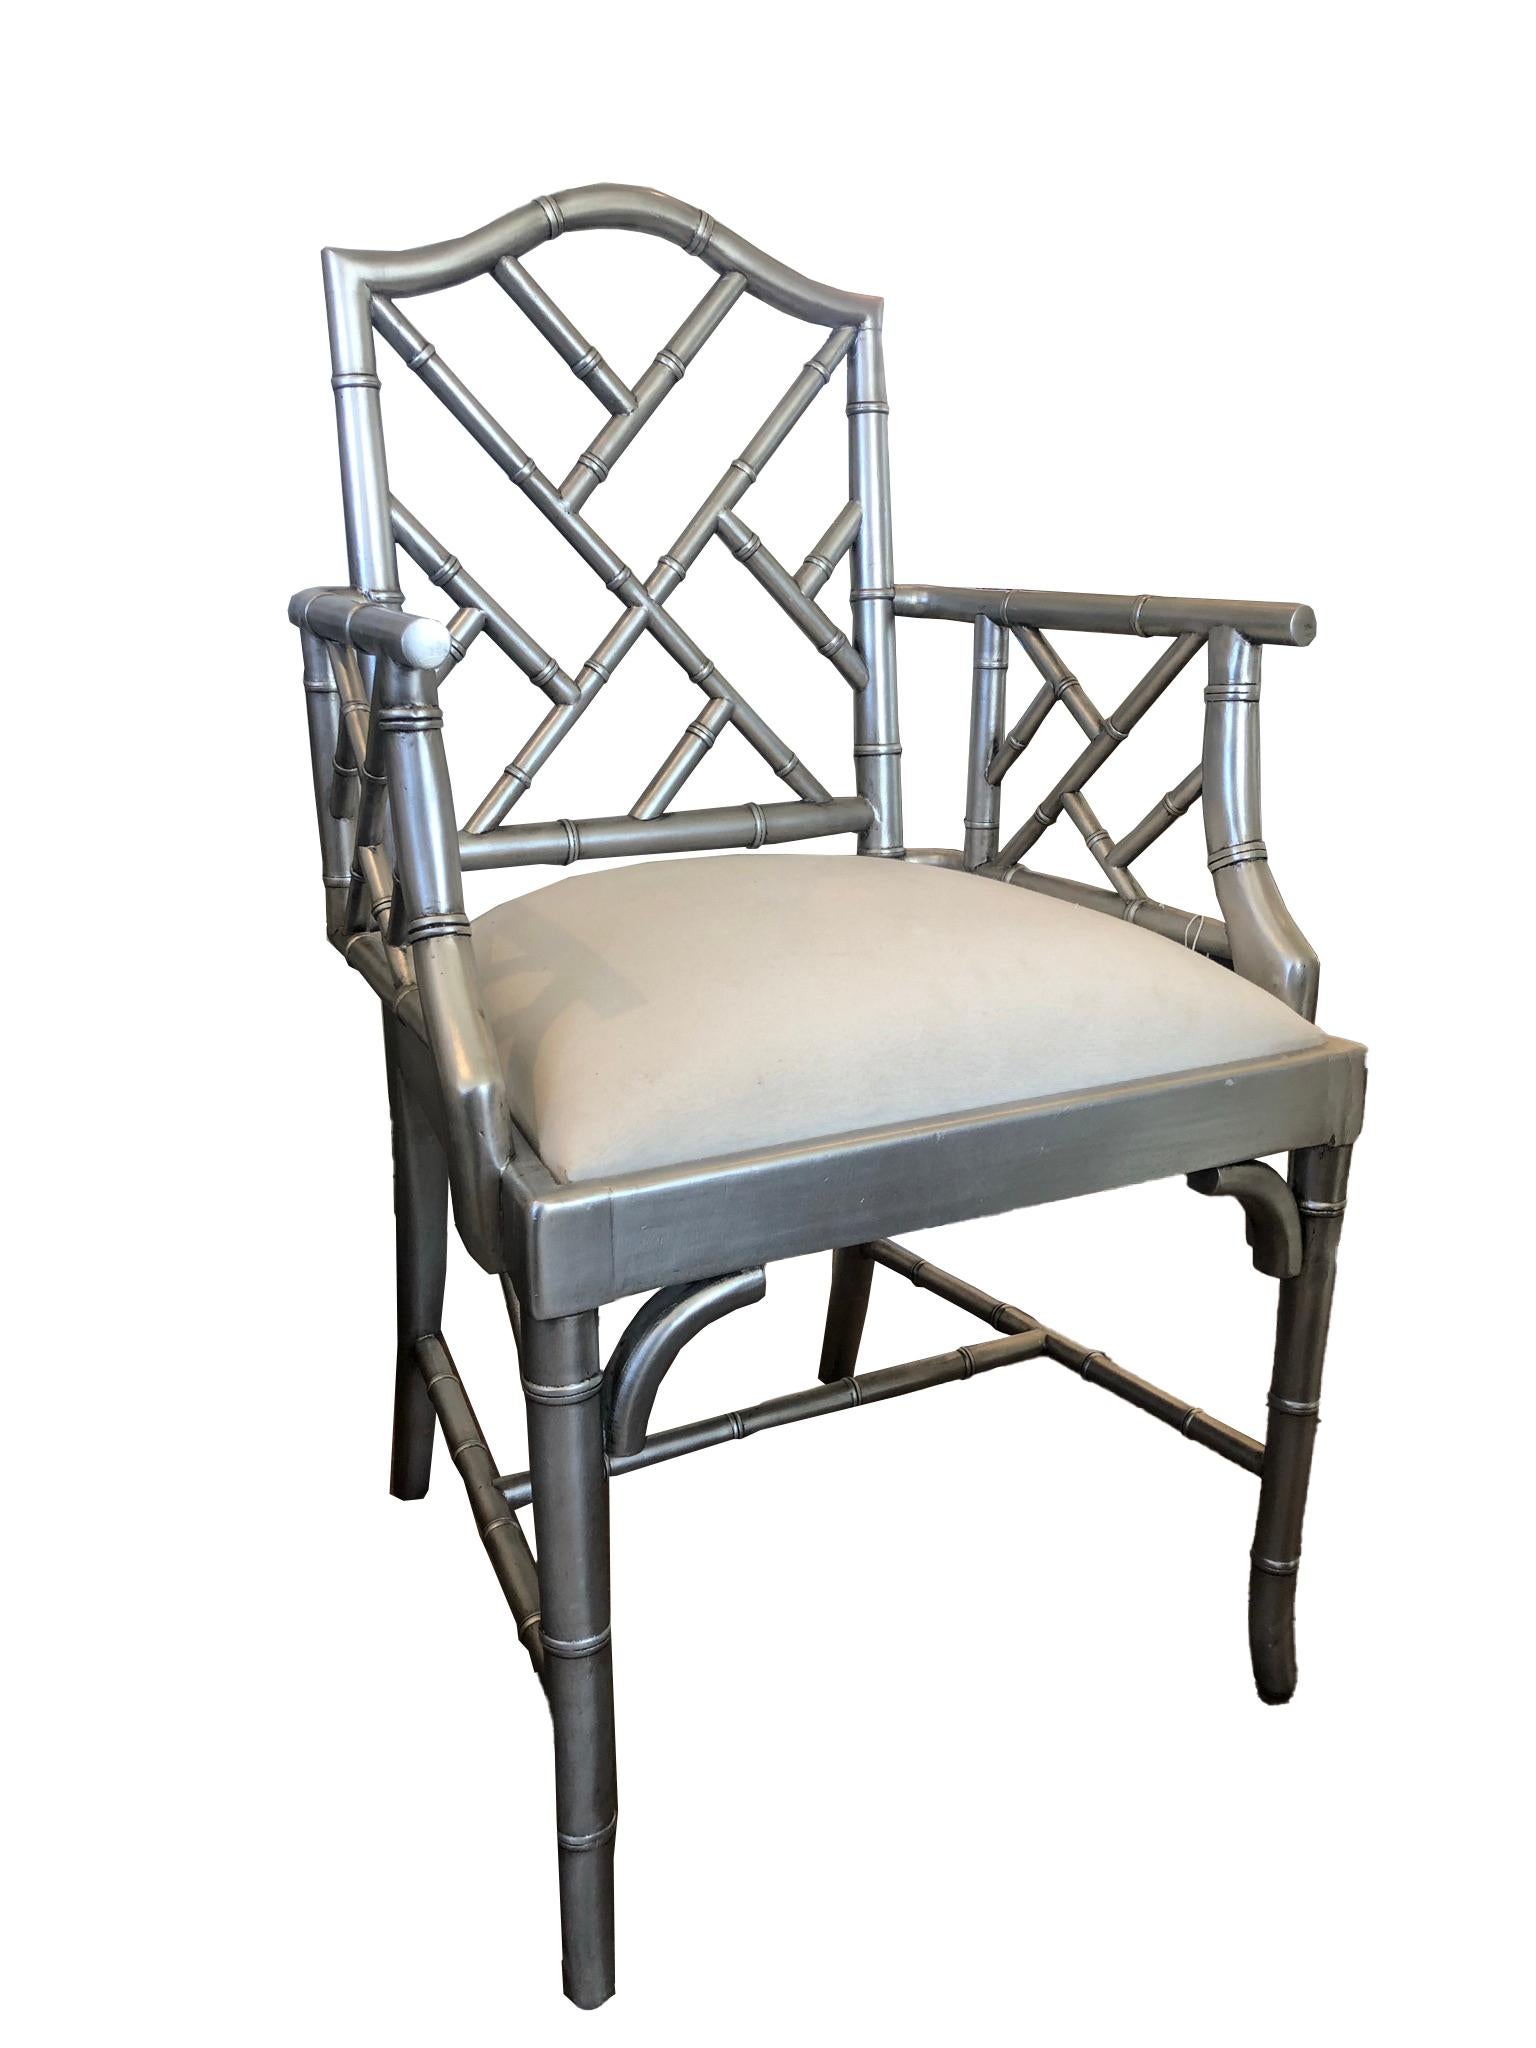 Silberfarben lackierte Vintage-Sessel im Chippendale-Bambus-Stil. Die Leinensitze sind weiß und mit neueren Polstern versehen.